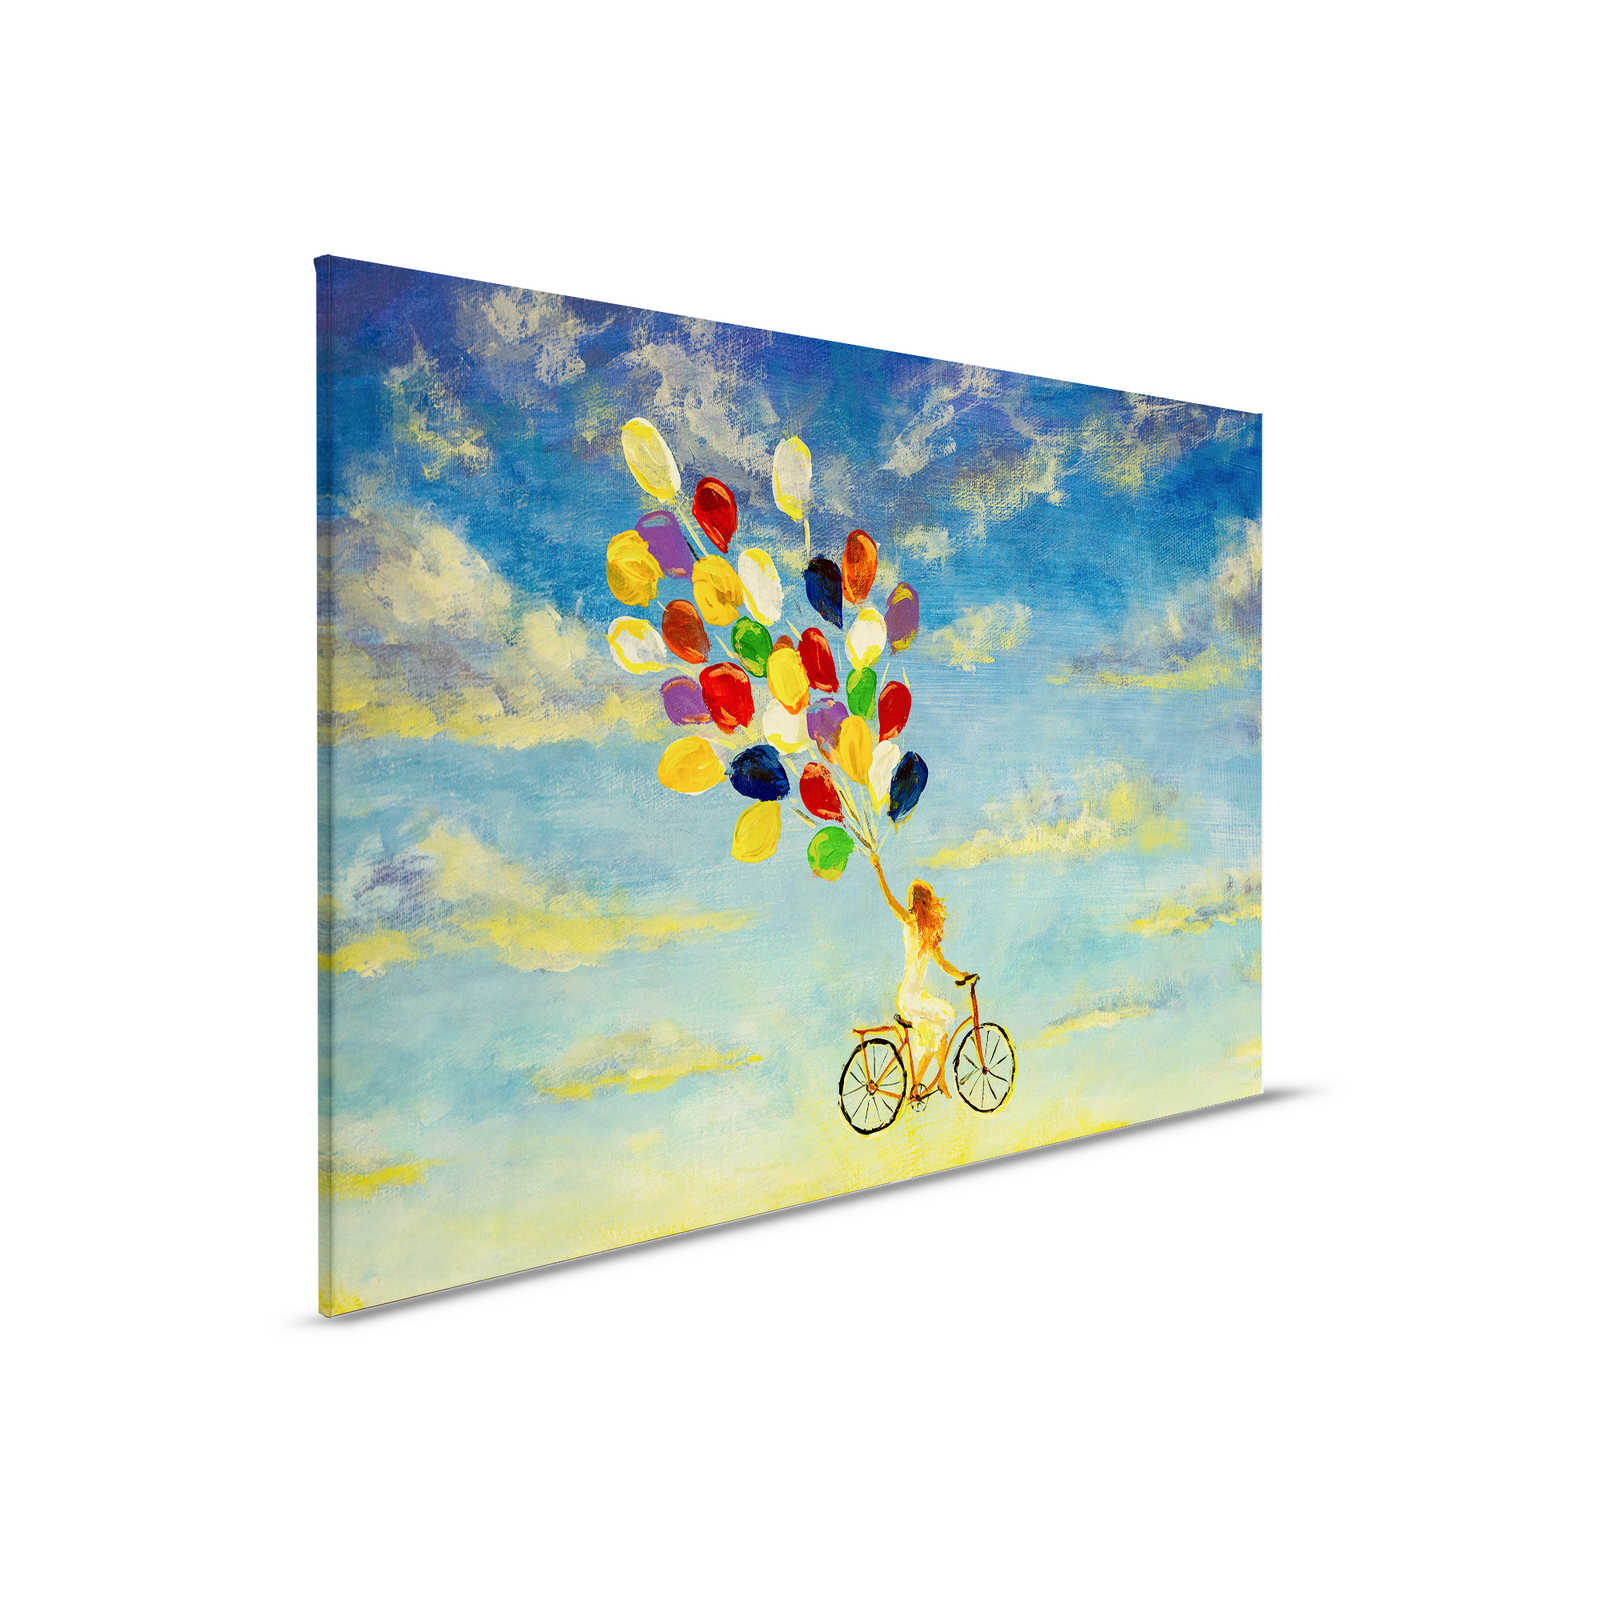         Leinwandbild mit Frau auf Fahrrad im Himmel Gemälde – 0,90 m x 0,60 m
    